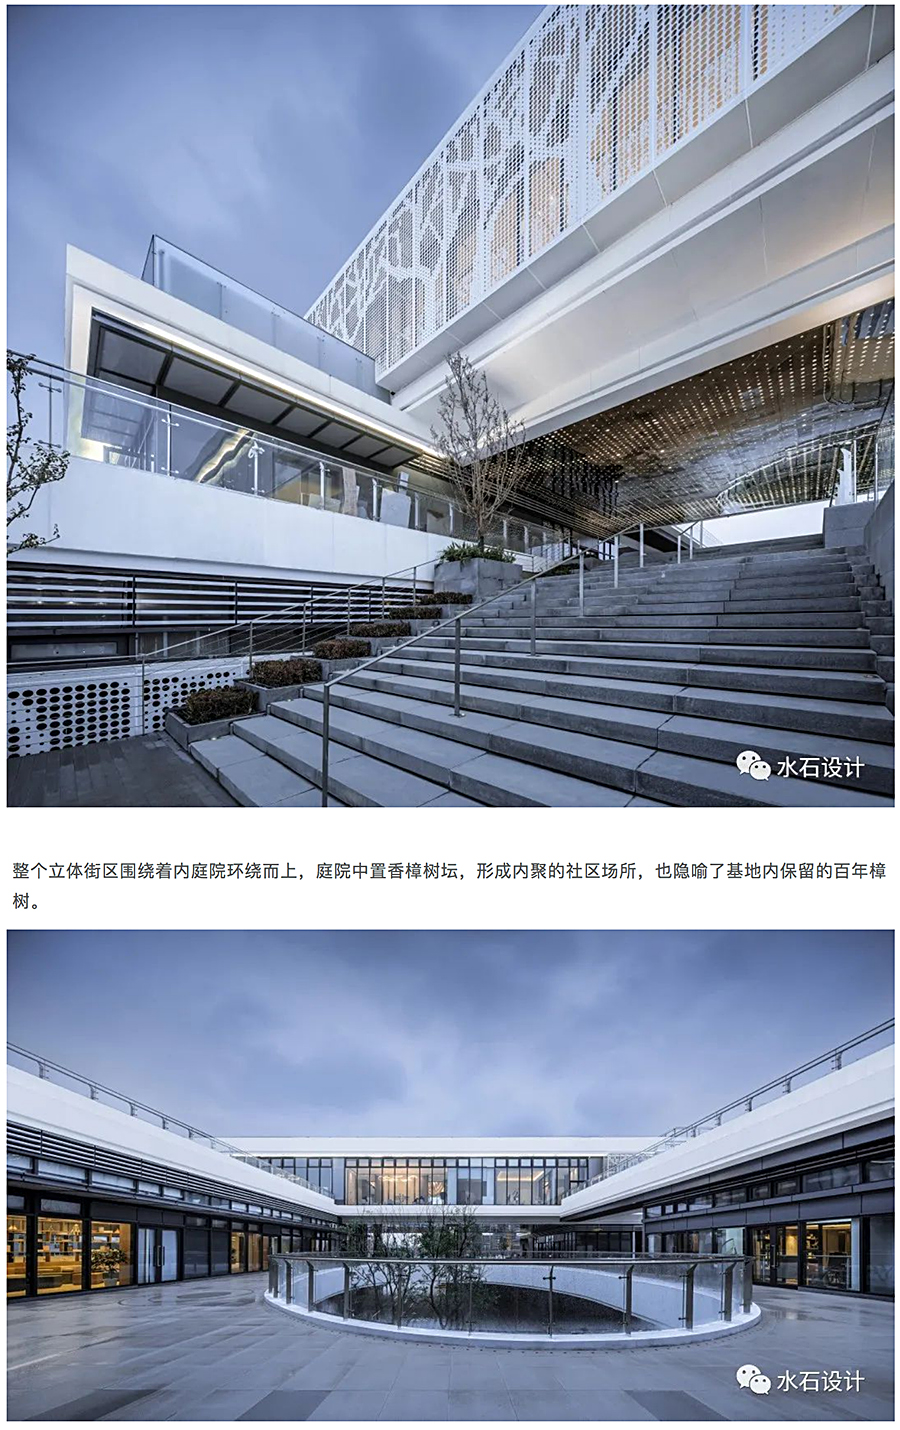 建构立体的城市社区公园-_-中国城乡总部经济产业园城市展厅_0008_图层-9.jpg